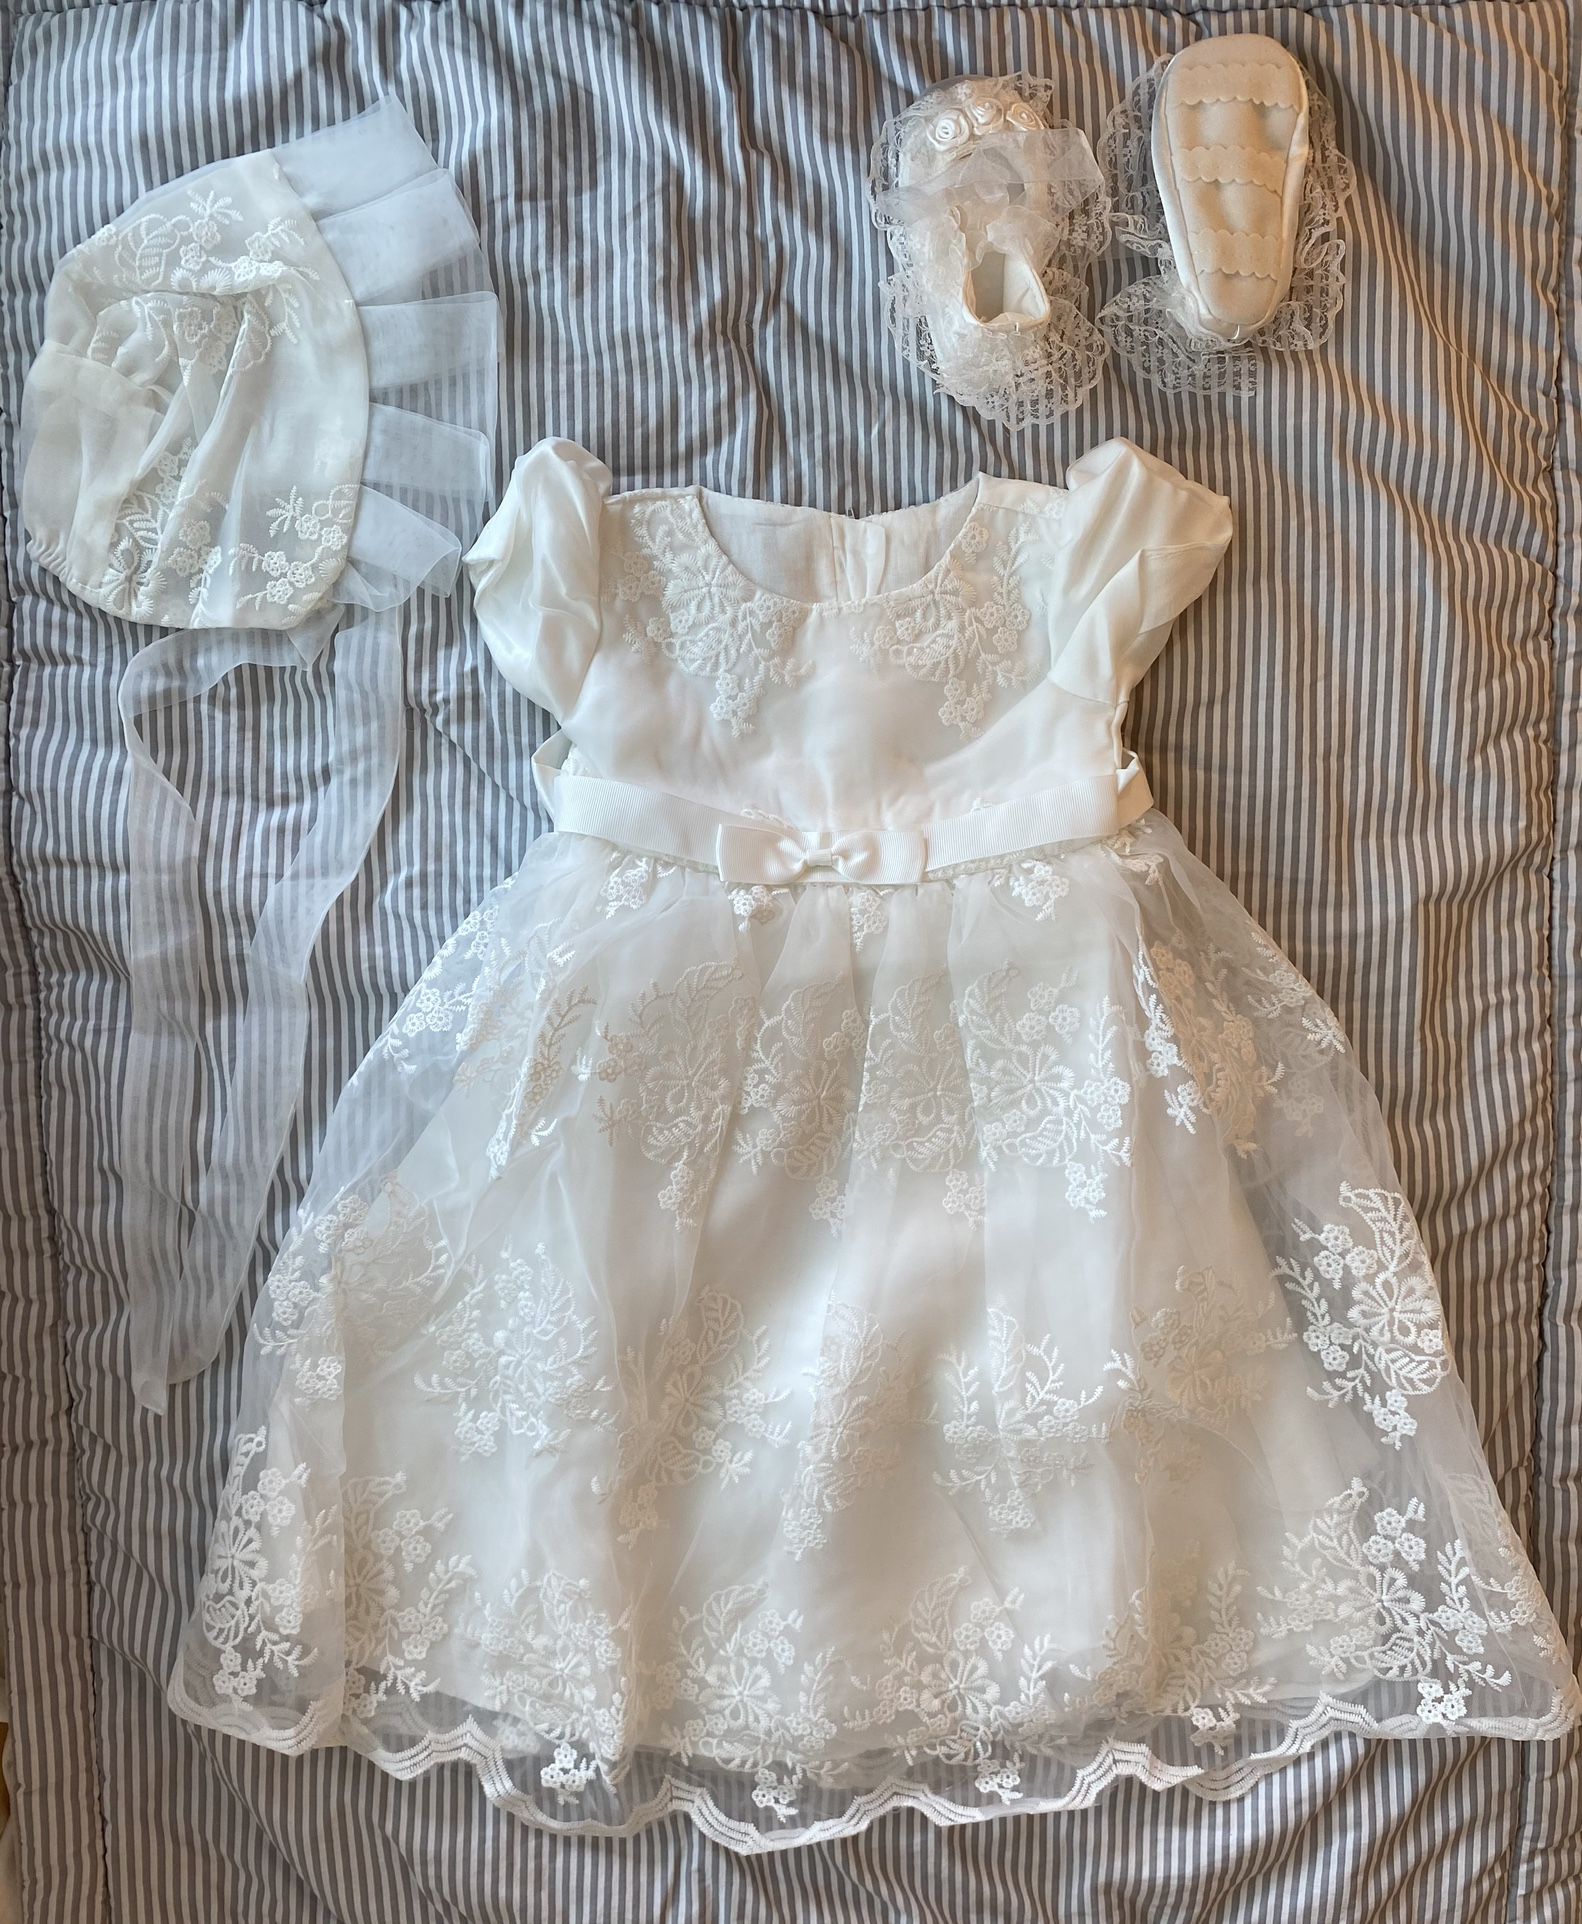 Glamulice Christening Baptism White Baby Dress